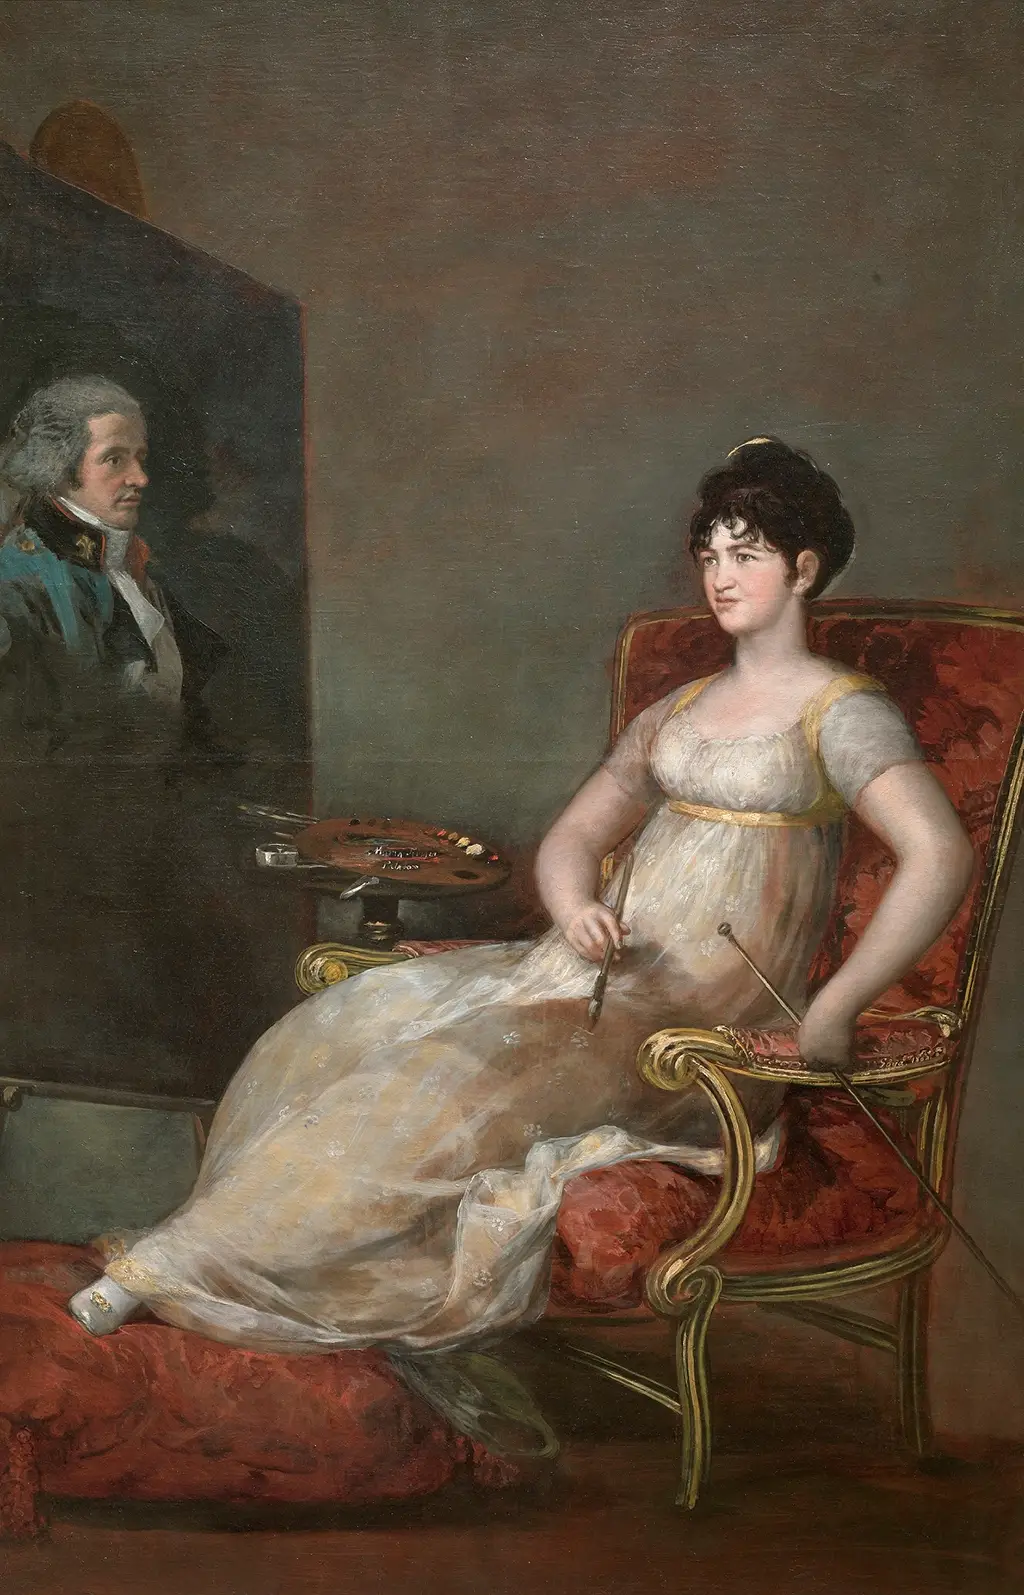 María Tomasa de Palafox y Portocarrero, Marchioness of Villafranca, Painting her Husband in Detail Francisco de Goya